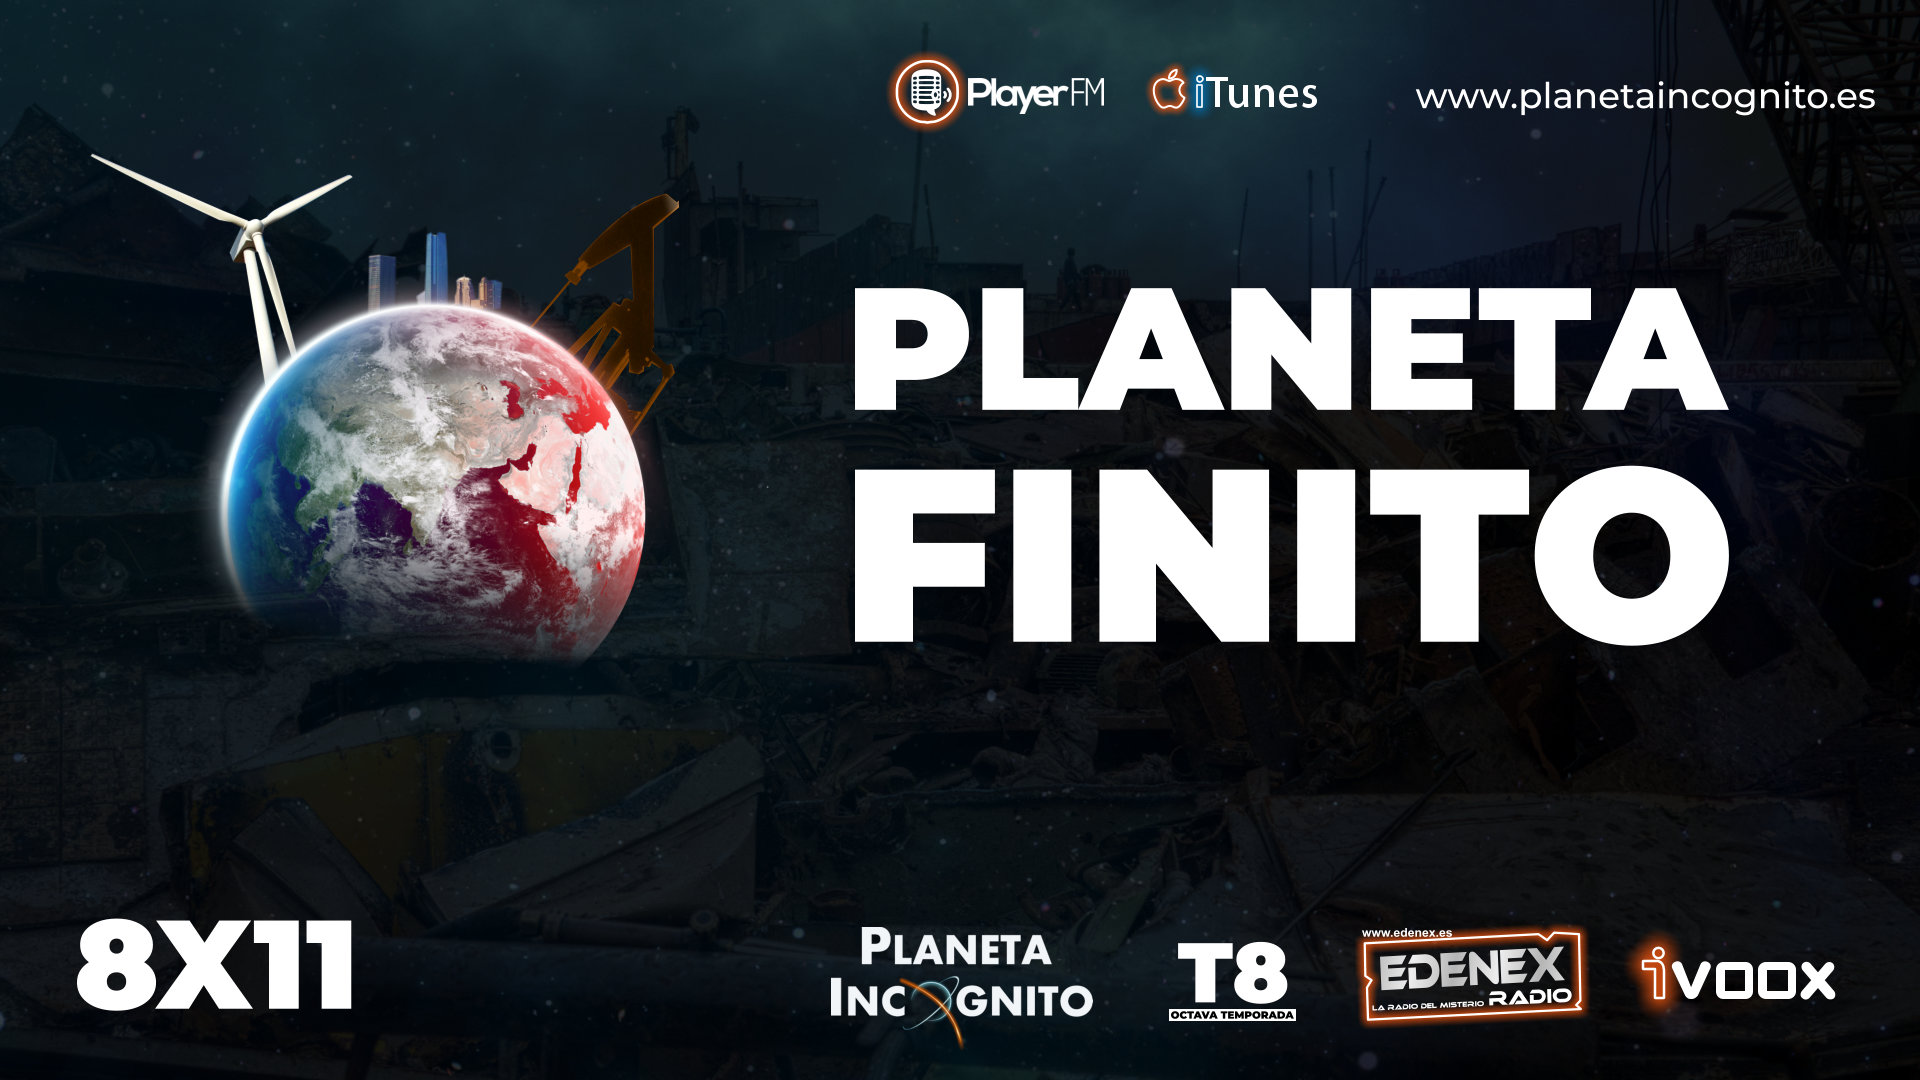 Planetafintioc, Misterio y Ciencia en Planeta Incógnito: Revista web y podcast